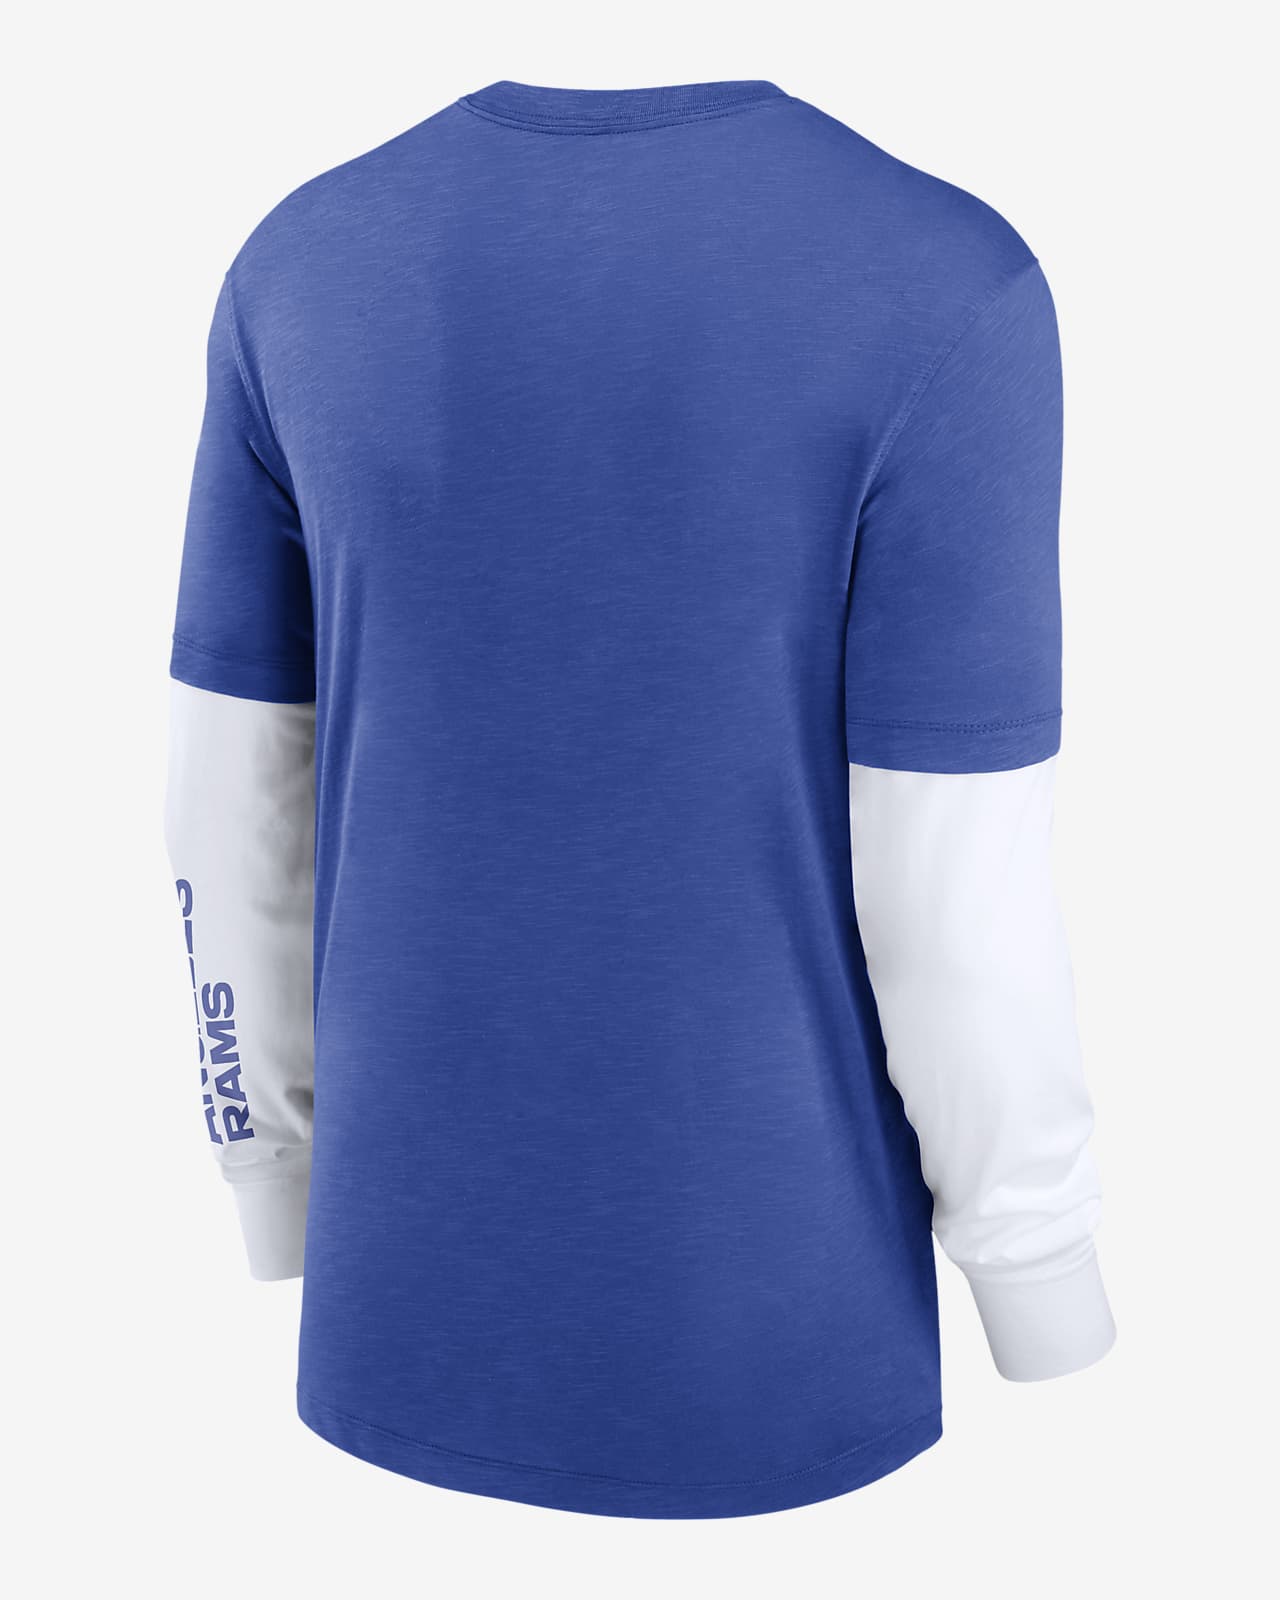 Nike Los Angeles Rams Men's NFL Long-Sleeve Top Blue